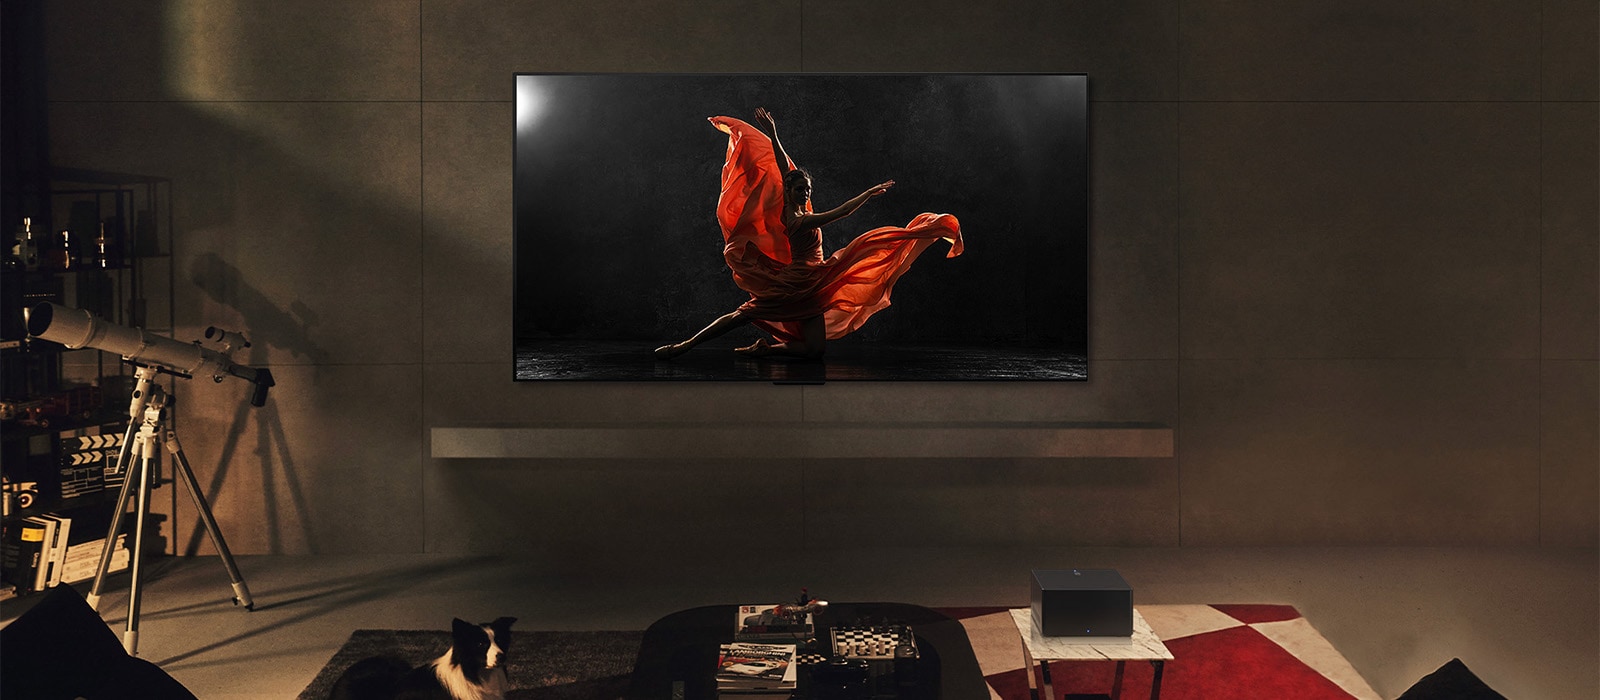 Μια LG SIGNATURE OLED M4 και ένα LG Soundbar σε ένα σύγχρονο σαλόνι τη νύχτα. Εμφανίζεται μια εικόνα μιας χορεύτριας σε σκούρα σκηνή με τα ιδανικά επίπεδα φωτεινότητας.